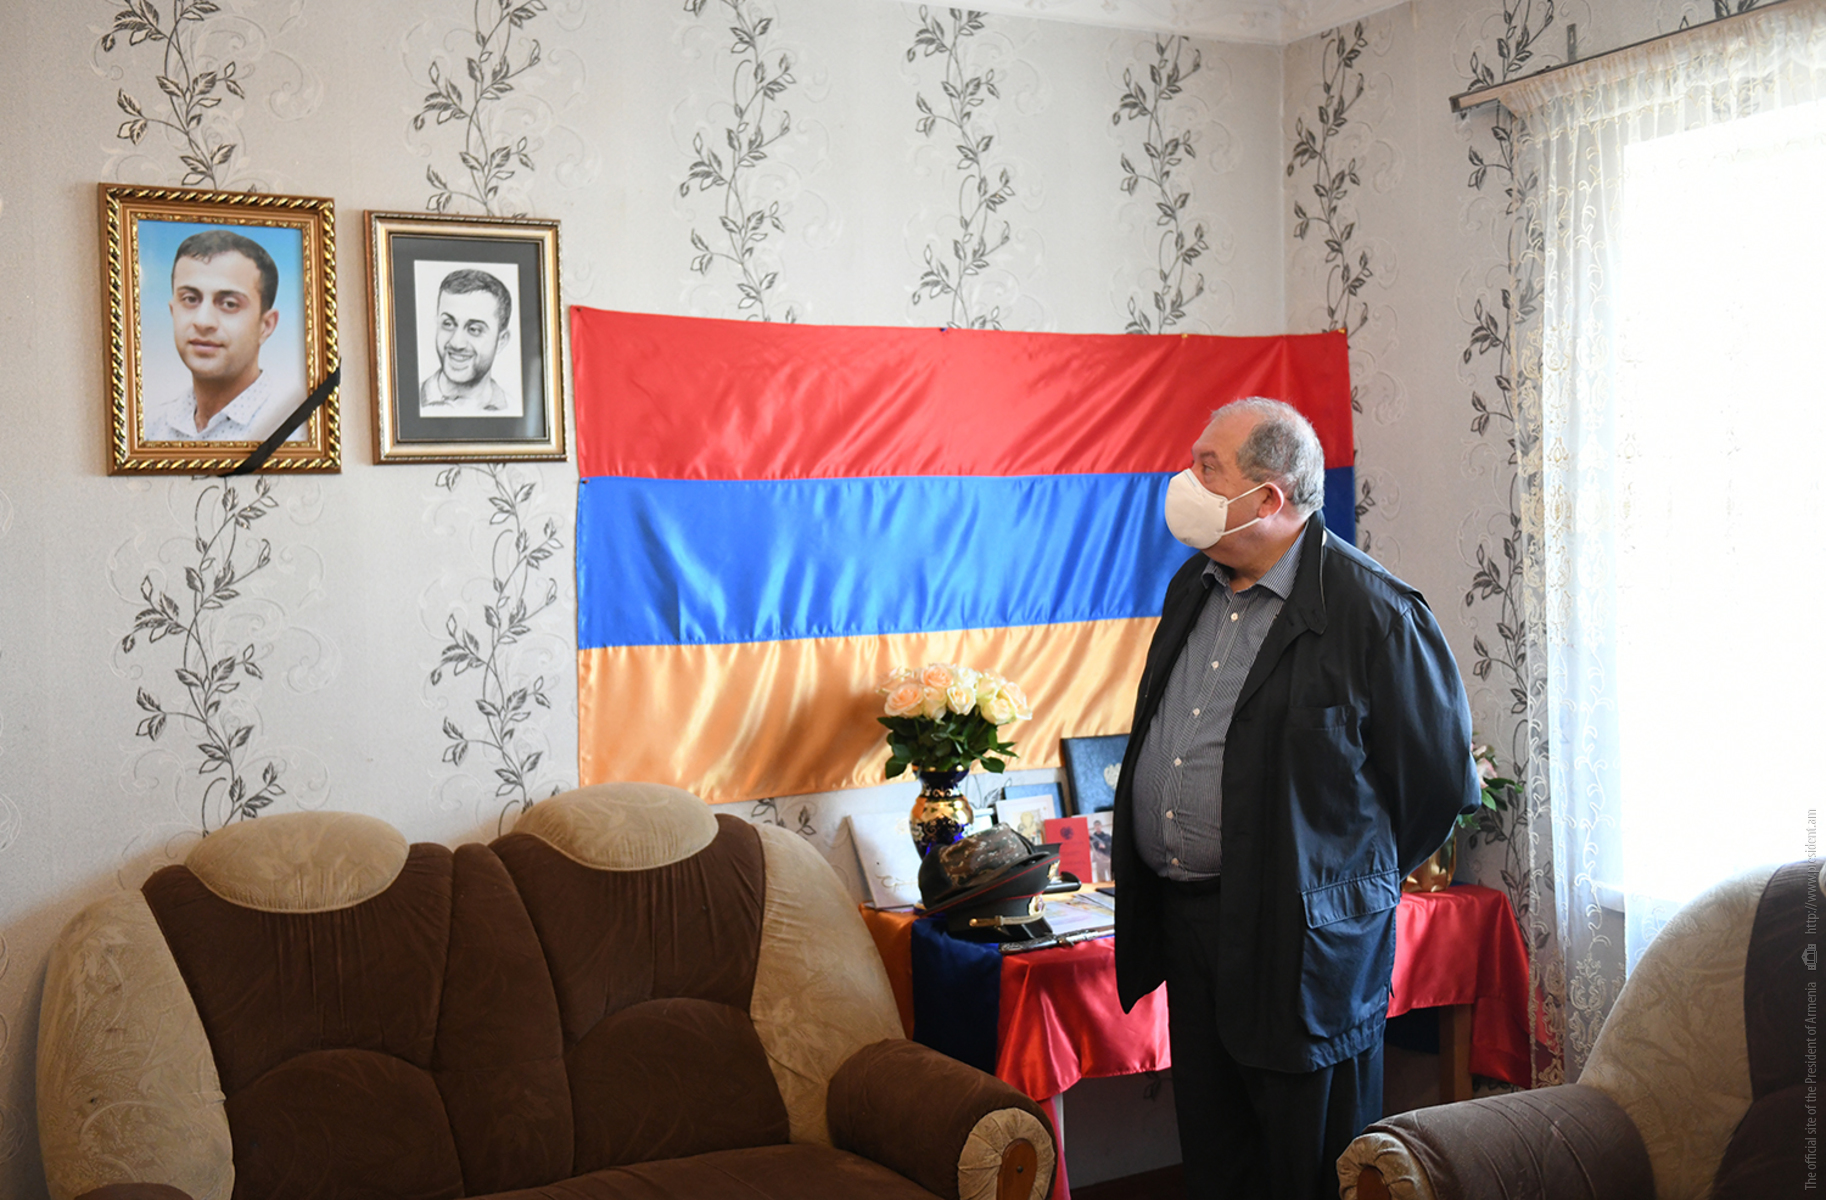 Խոնարհվում եմ նրա անմար հիշատակի առաջ. նախագահ Արմեն Սարգսյանն այցելել է օրեր առաջ Ադրբեջանի սանձազերծած ռազմական գործողությունների հետևանքով զոհված Սոս Էլբակյանի ընտանիքին